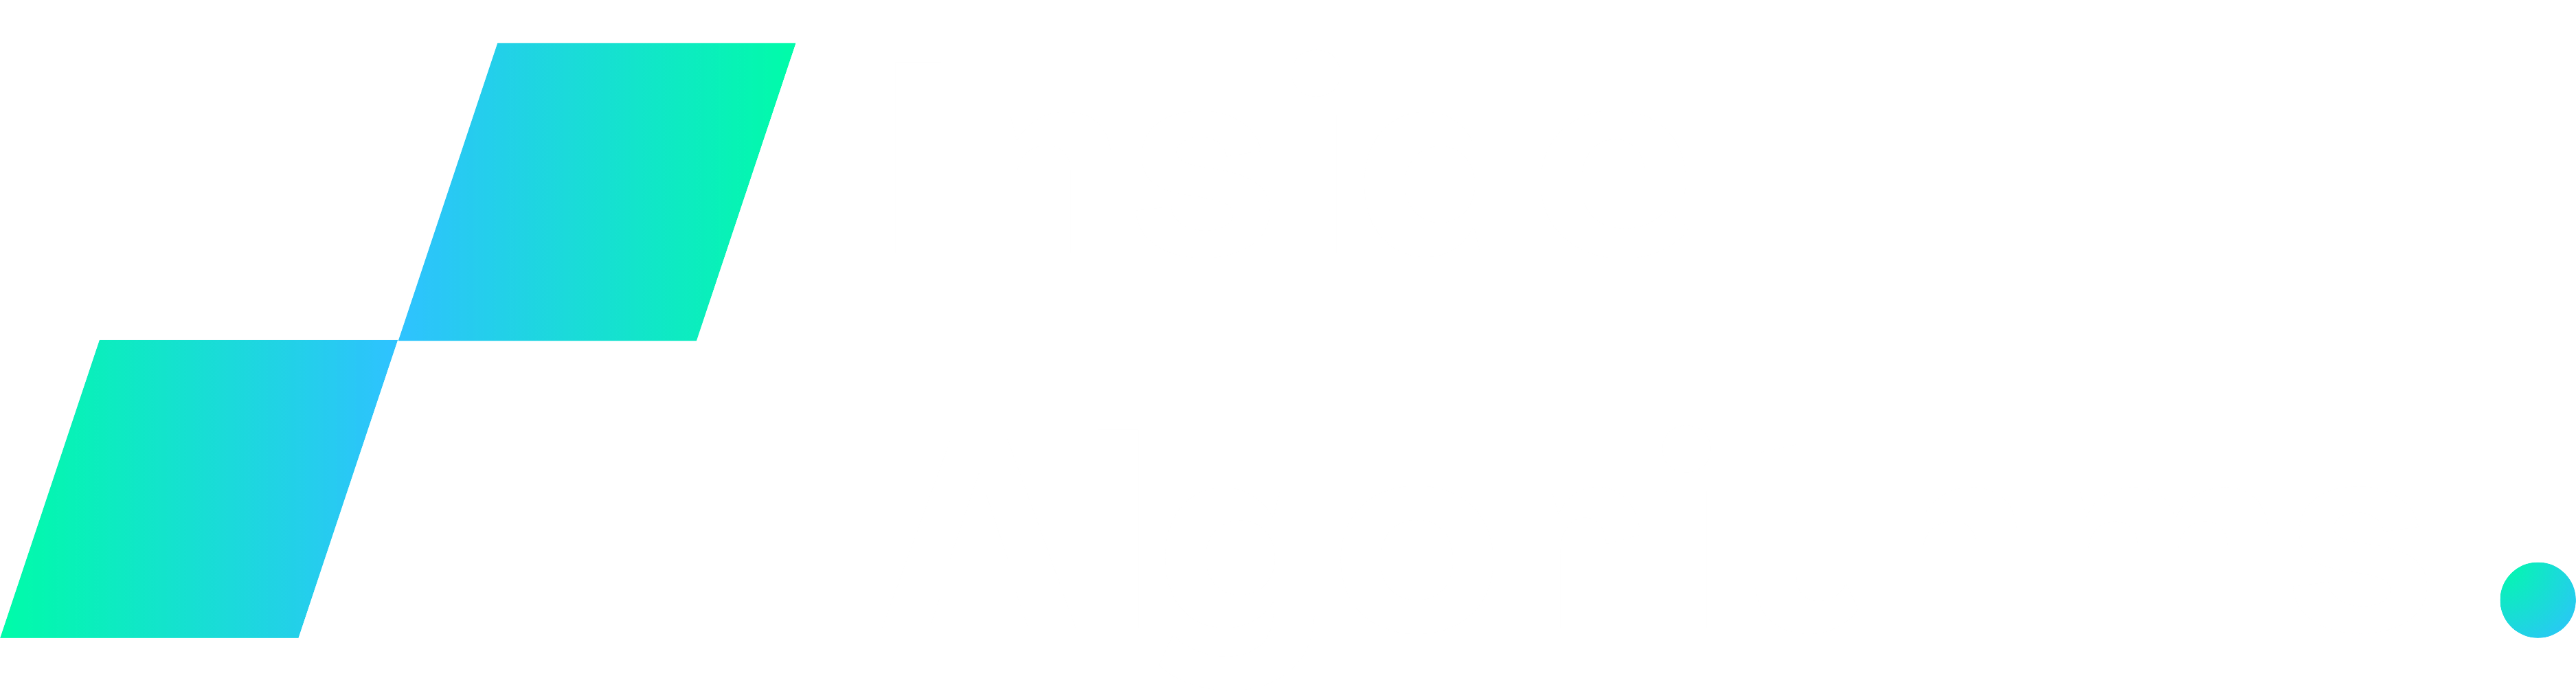 Inside Algorithms